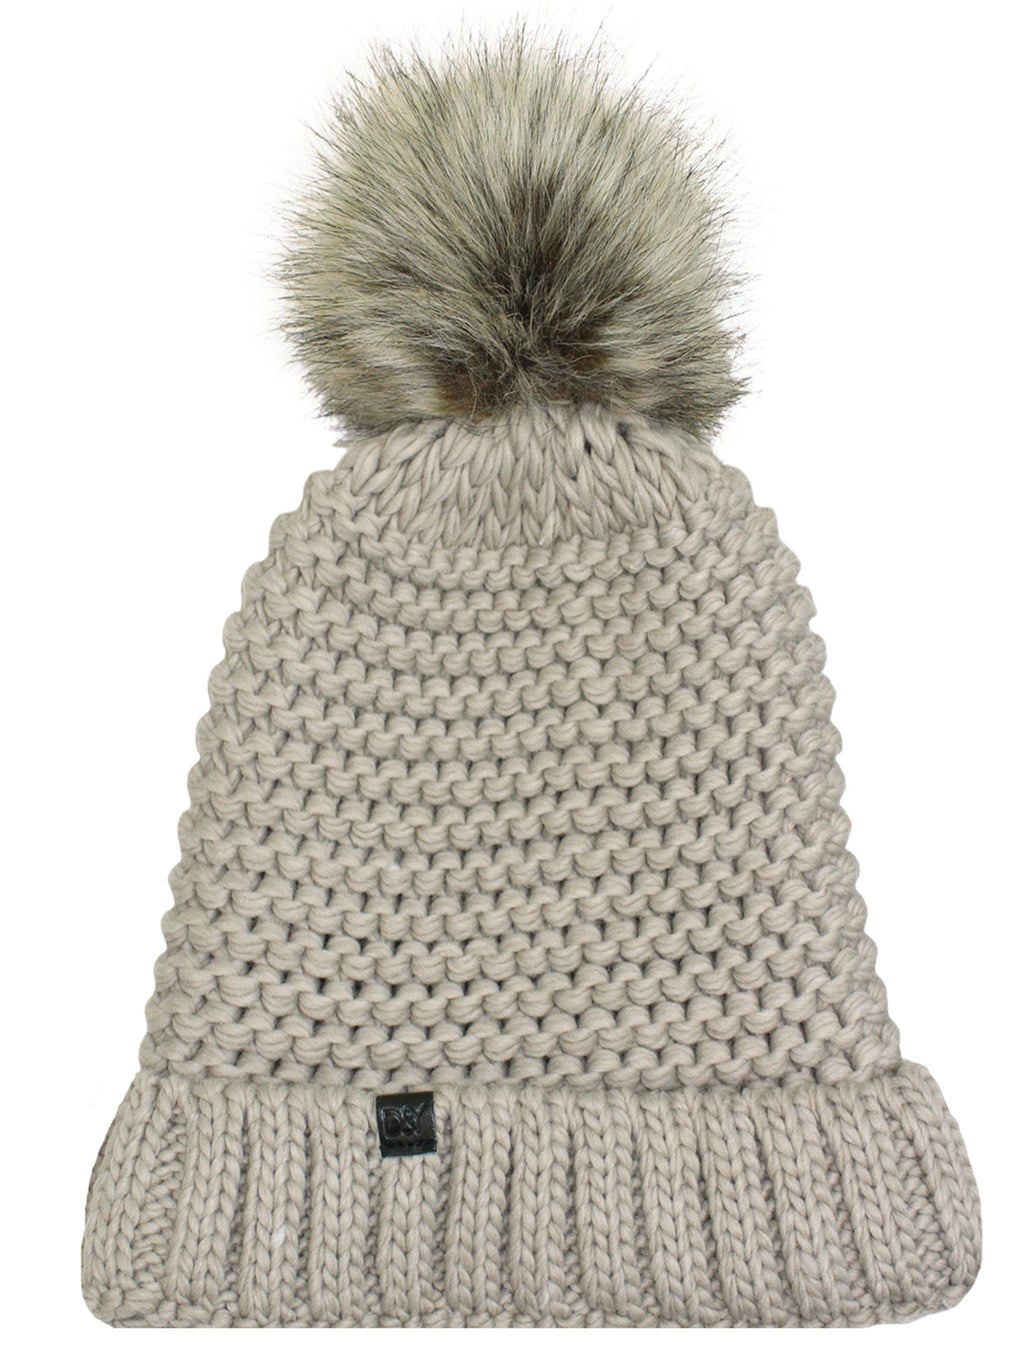 Taupe Knit Beanie Hat With Faux Fur Pom Pom